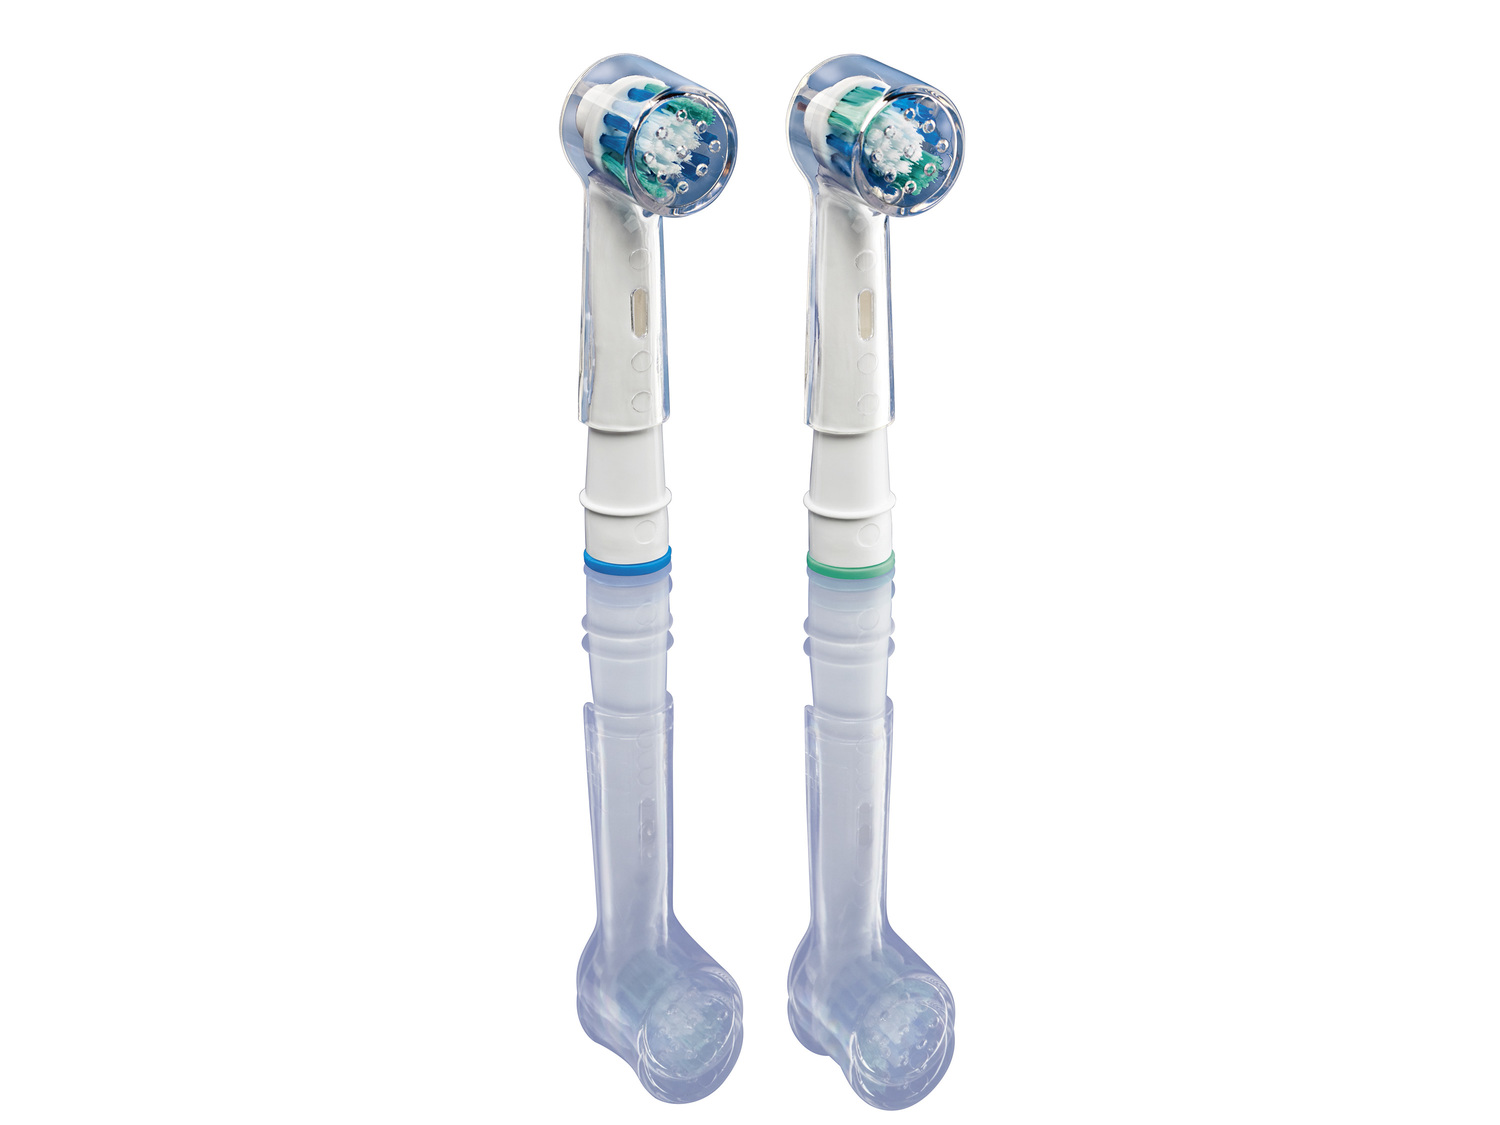 Elektryczna szczoteczka do zębów Nevadent, cena 59,90 PLN 
3 poziomy czyszczenia:
- ...